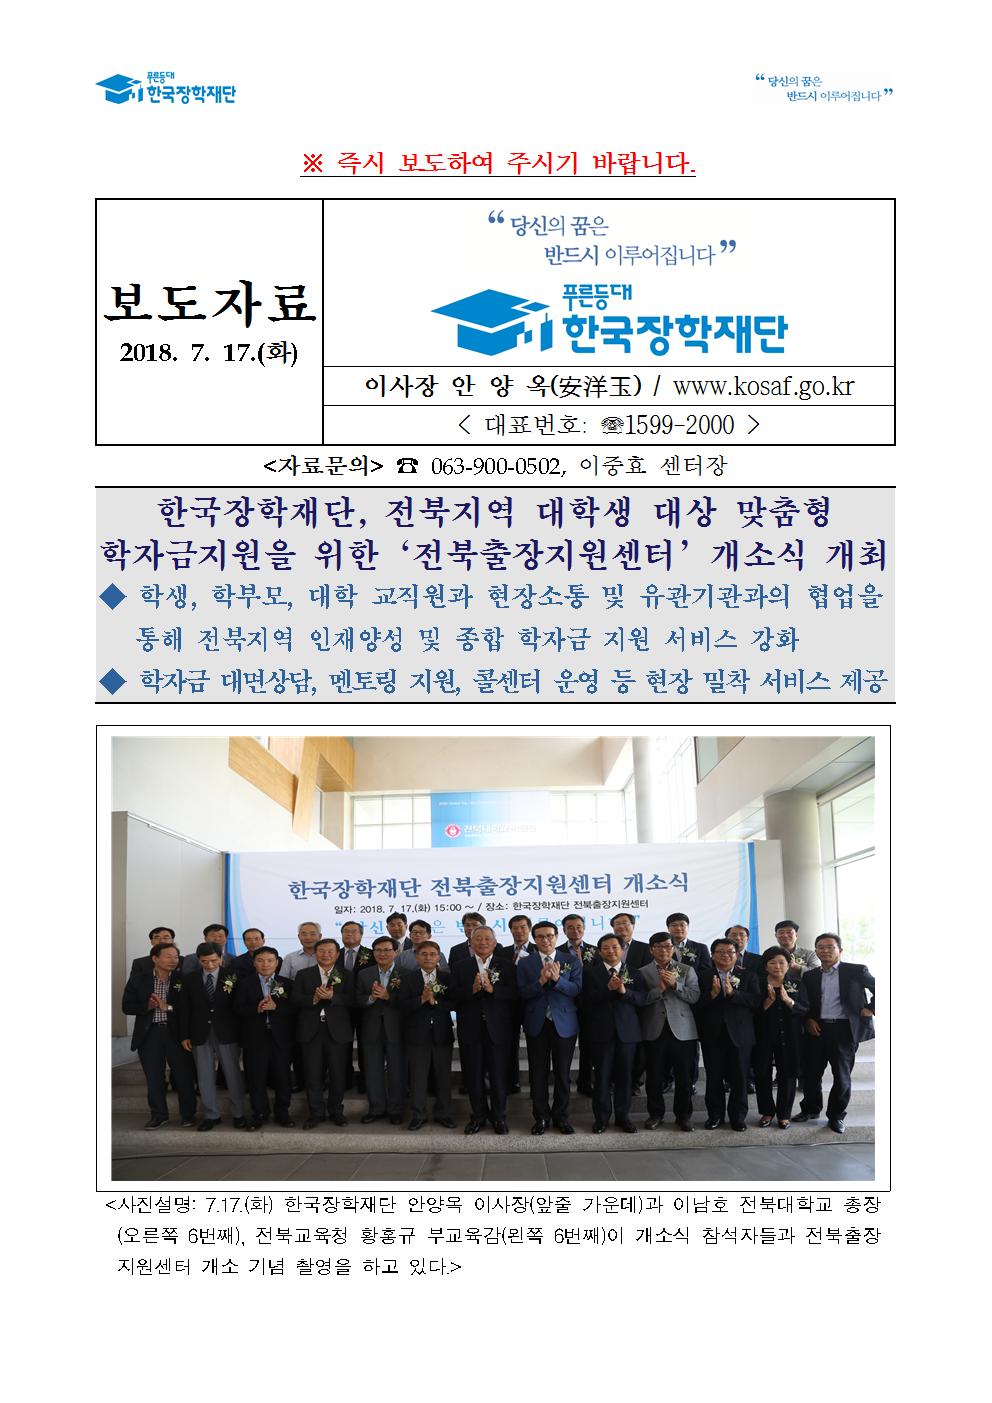 07-17(화)[보도자료] 한국장학재단 전북출장지원센터 개소식001.jpg